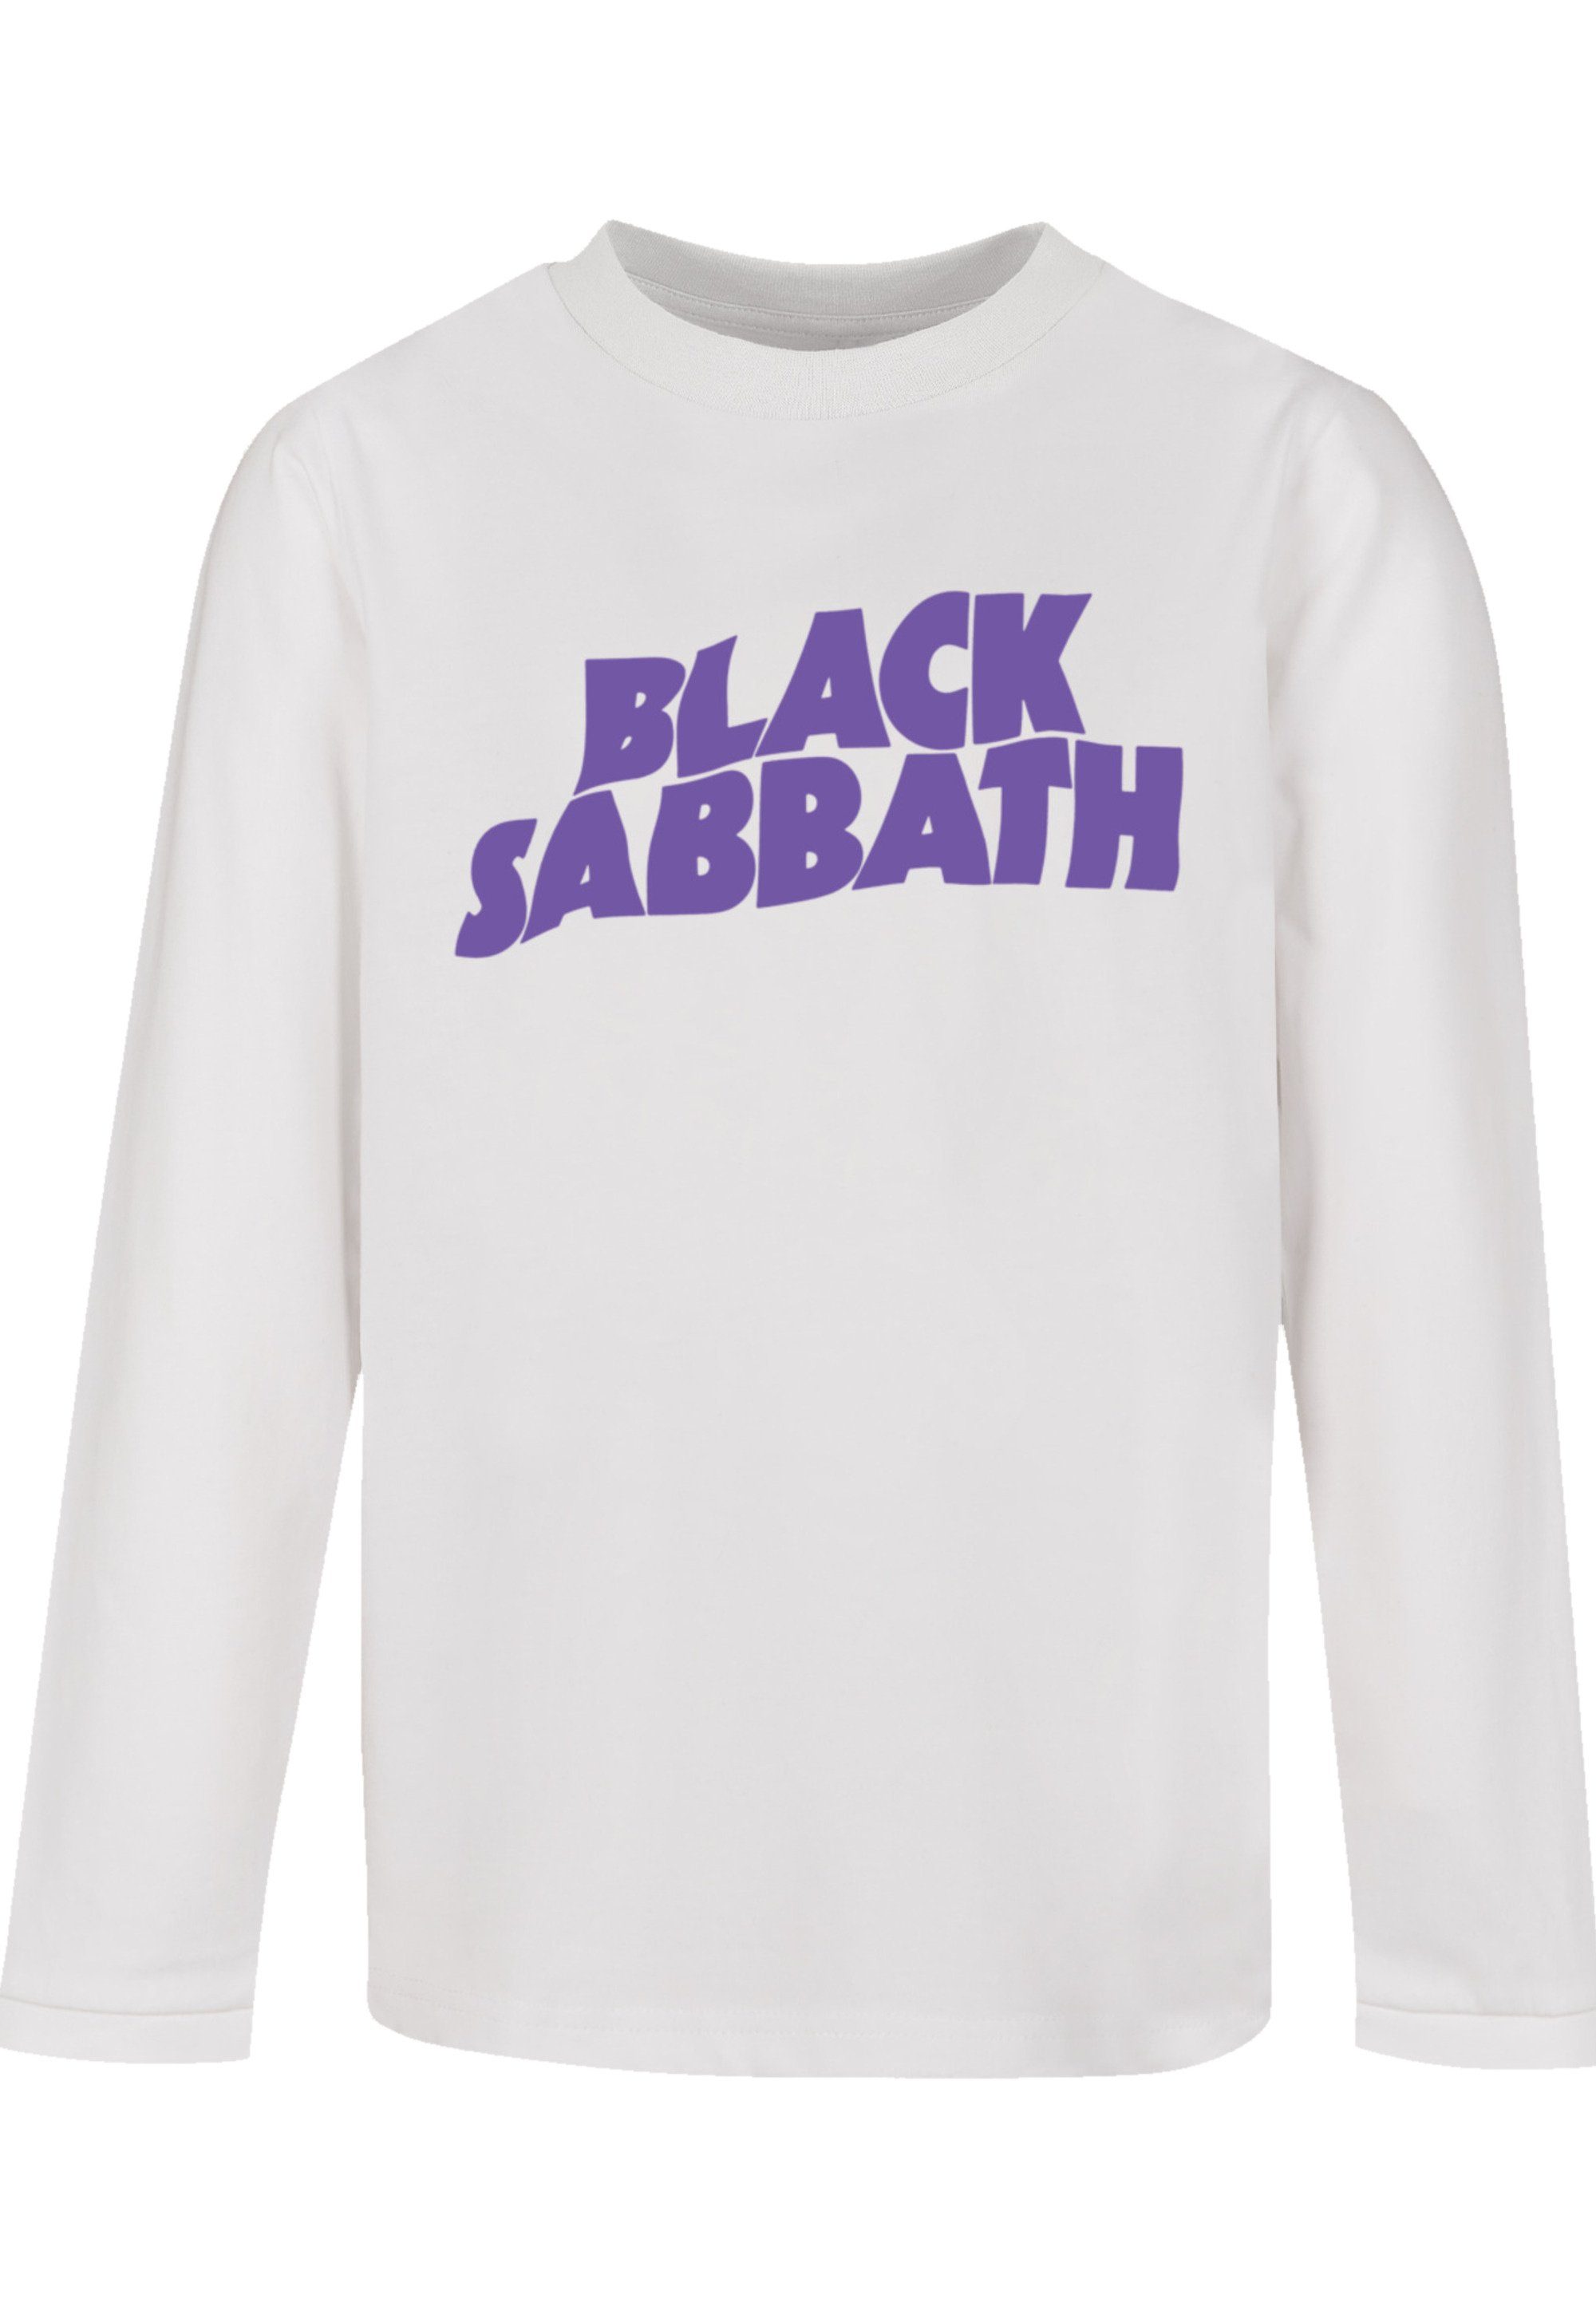 weicher mit Baumwollstoff Print, Black Sabbath Tragekomfort Sehr Wavy Logo Black T-Shirt F4NT4STIC hohem